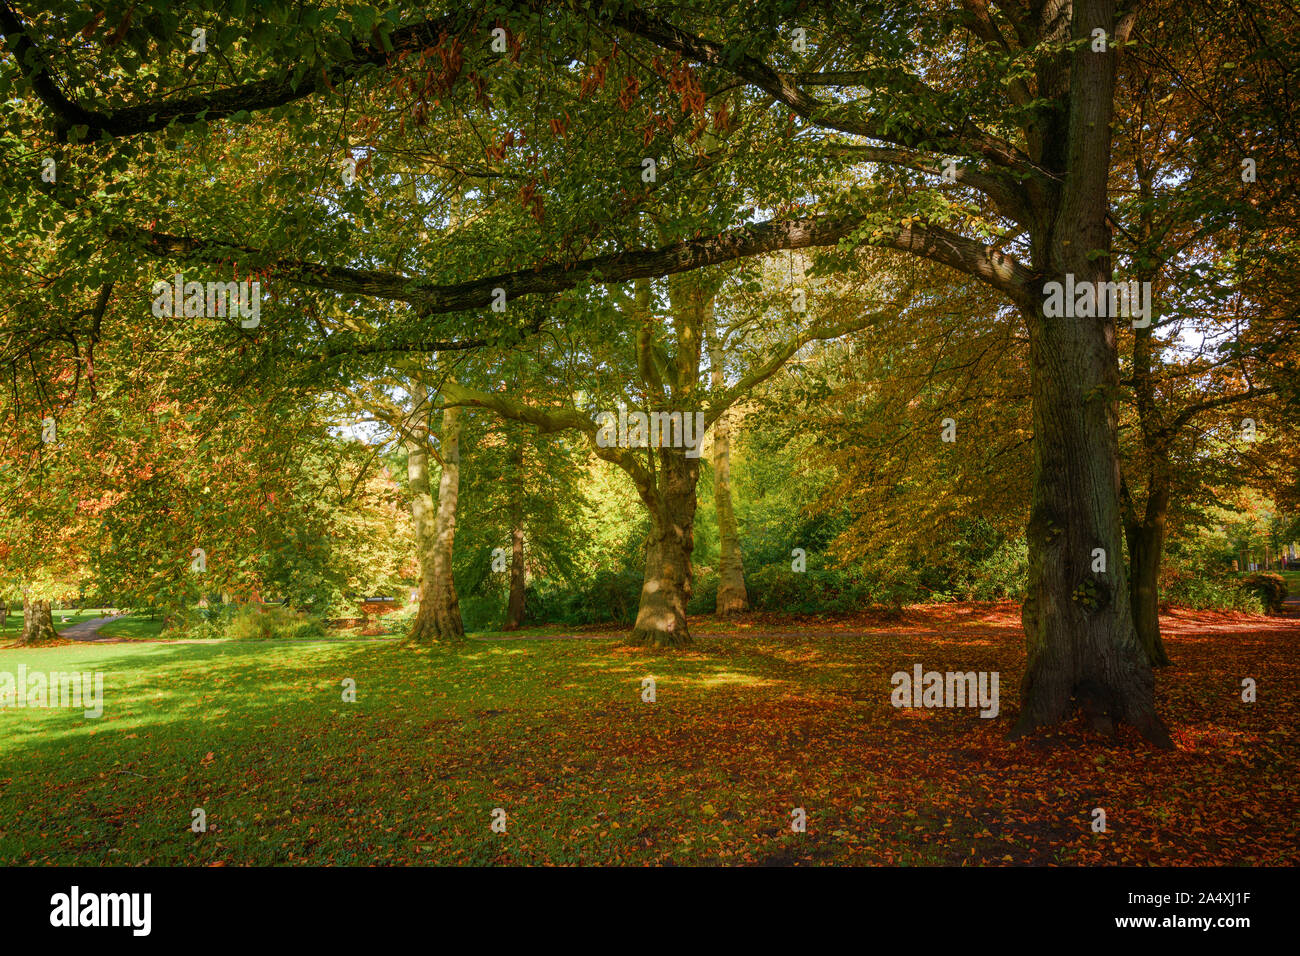 Autunno bello e mite di alberi con foglie colorate in un parco antico, natura stagionale sfondo, messa a fuoco selezionata Foto Stock